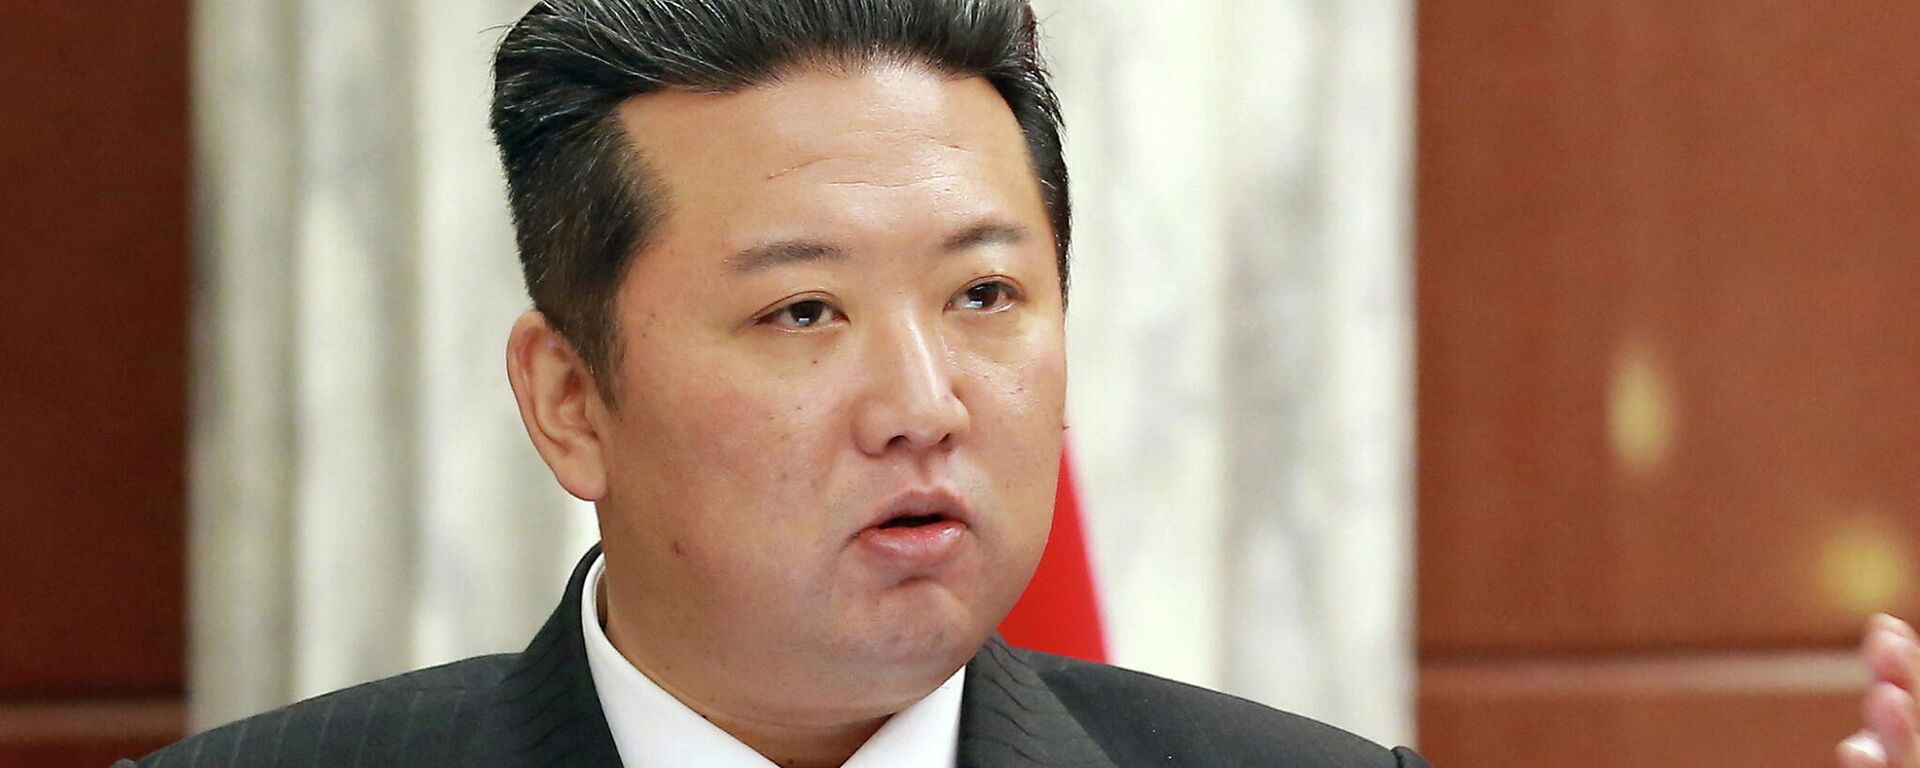 Kuzey Kore olarak bilinen Kore Demokratik Halk Cumhuriyeti'nin lideri Kim Jong Un, iktidardaki İşçi Partisi'nin Merkez Komitesi genel toplantısında konuşurken, hiç olmadığı kadar zayıflamış göründü.  - Sputnik Türkiye, 1920, 30.12.2021